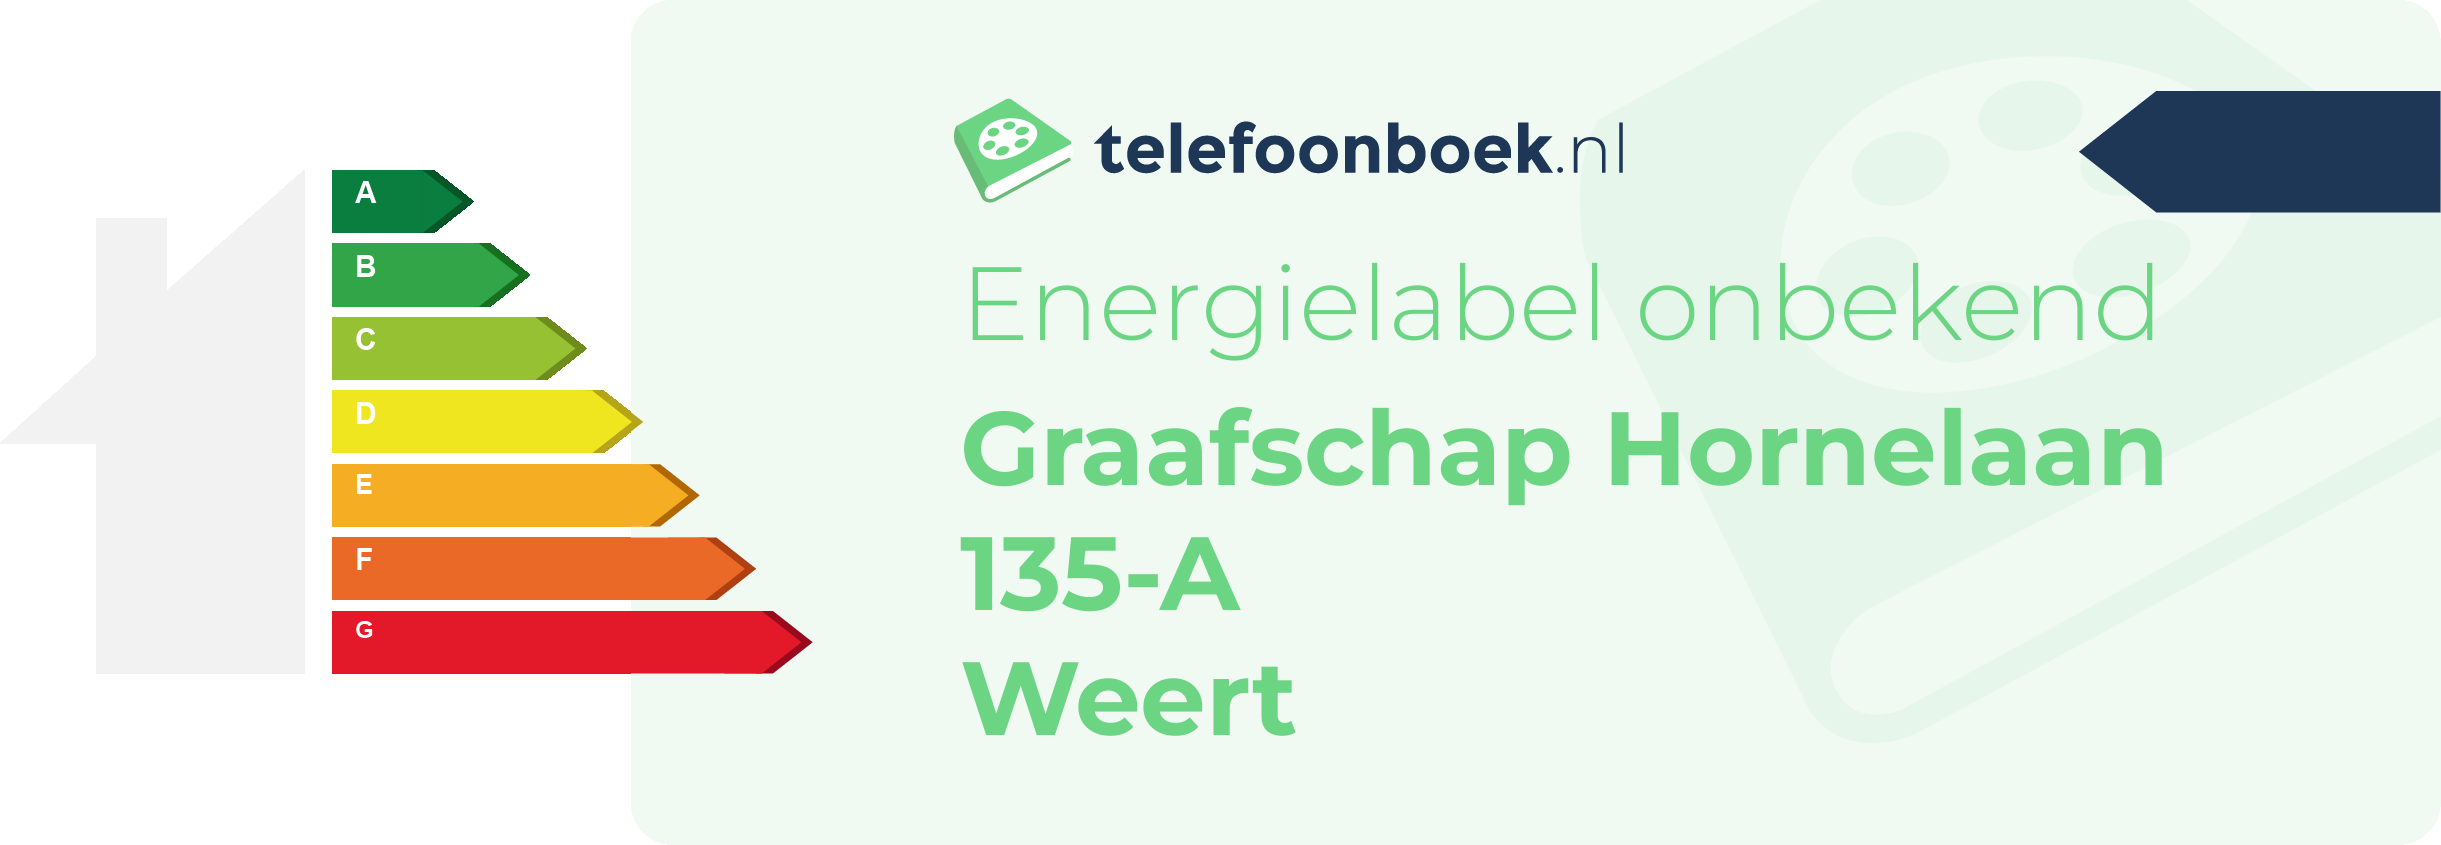 Energielabel Graafschap Hornelaan 135-A Weert